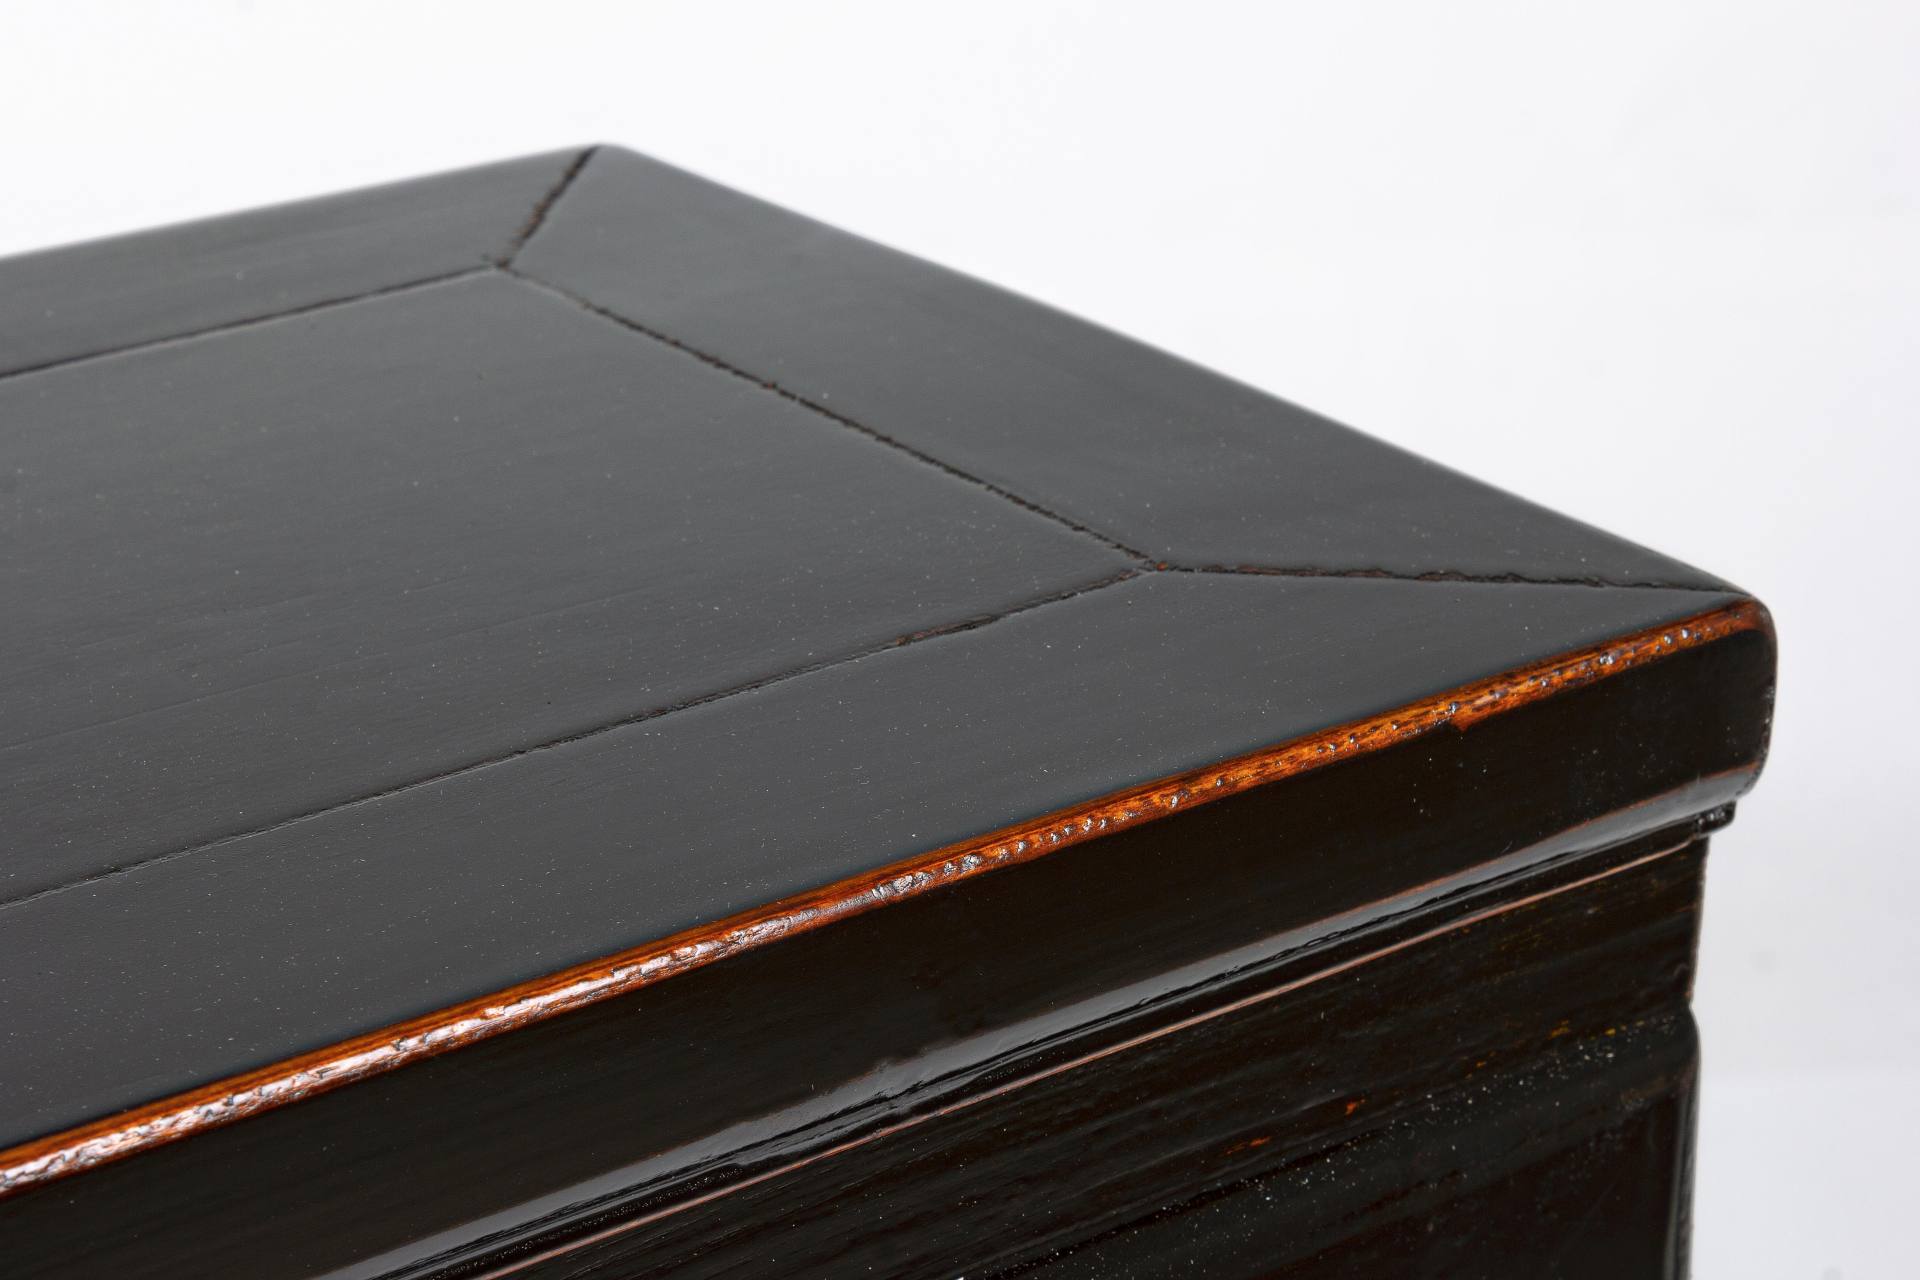 Die Konsole Jinan überzeugt mit ihrem klassischen Design. Gefertigt wurde sie aus Ulmenholz, welches einen schwarzen Farbton besitzt. Das Gestell ist auch aus Ulmenholz. Die Konsole verfügt über drei Schubladen. Die Breite beträgt 128 cm.